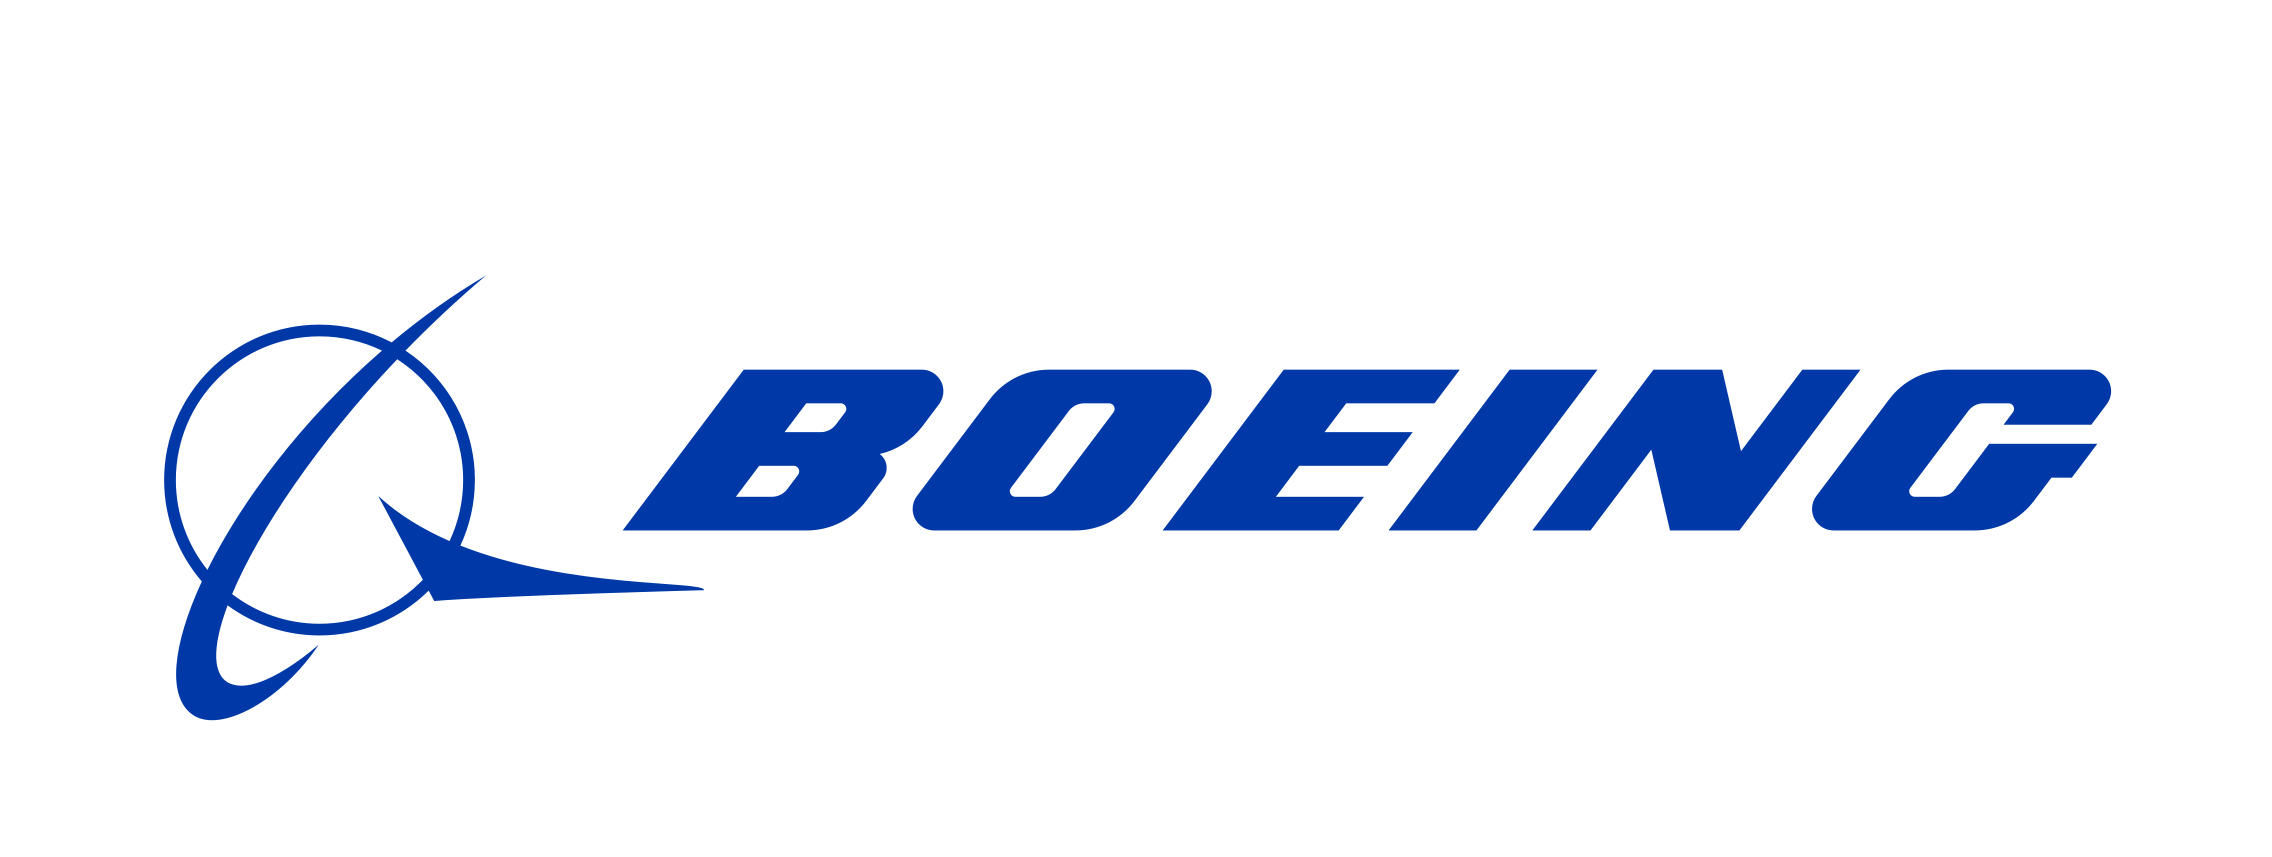 Boeing: Boeing UK - Home